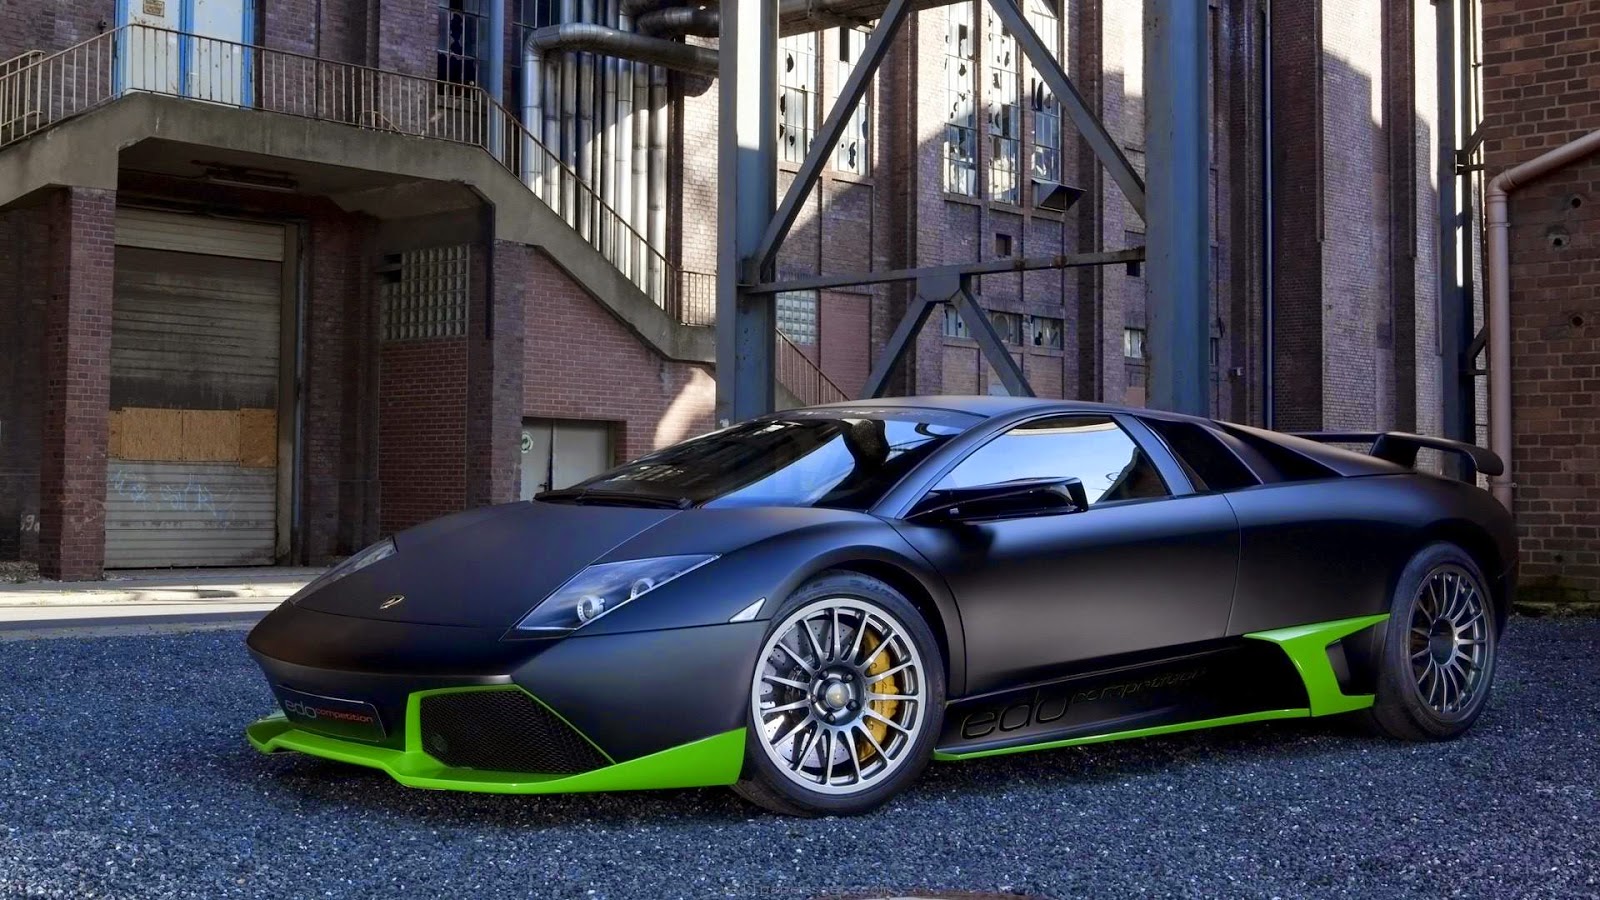 Kumpulan Foto Mobil Lamborghini Super Keren Terbaru Modif Paling